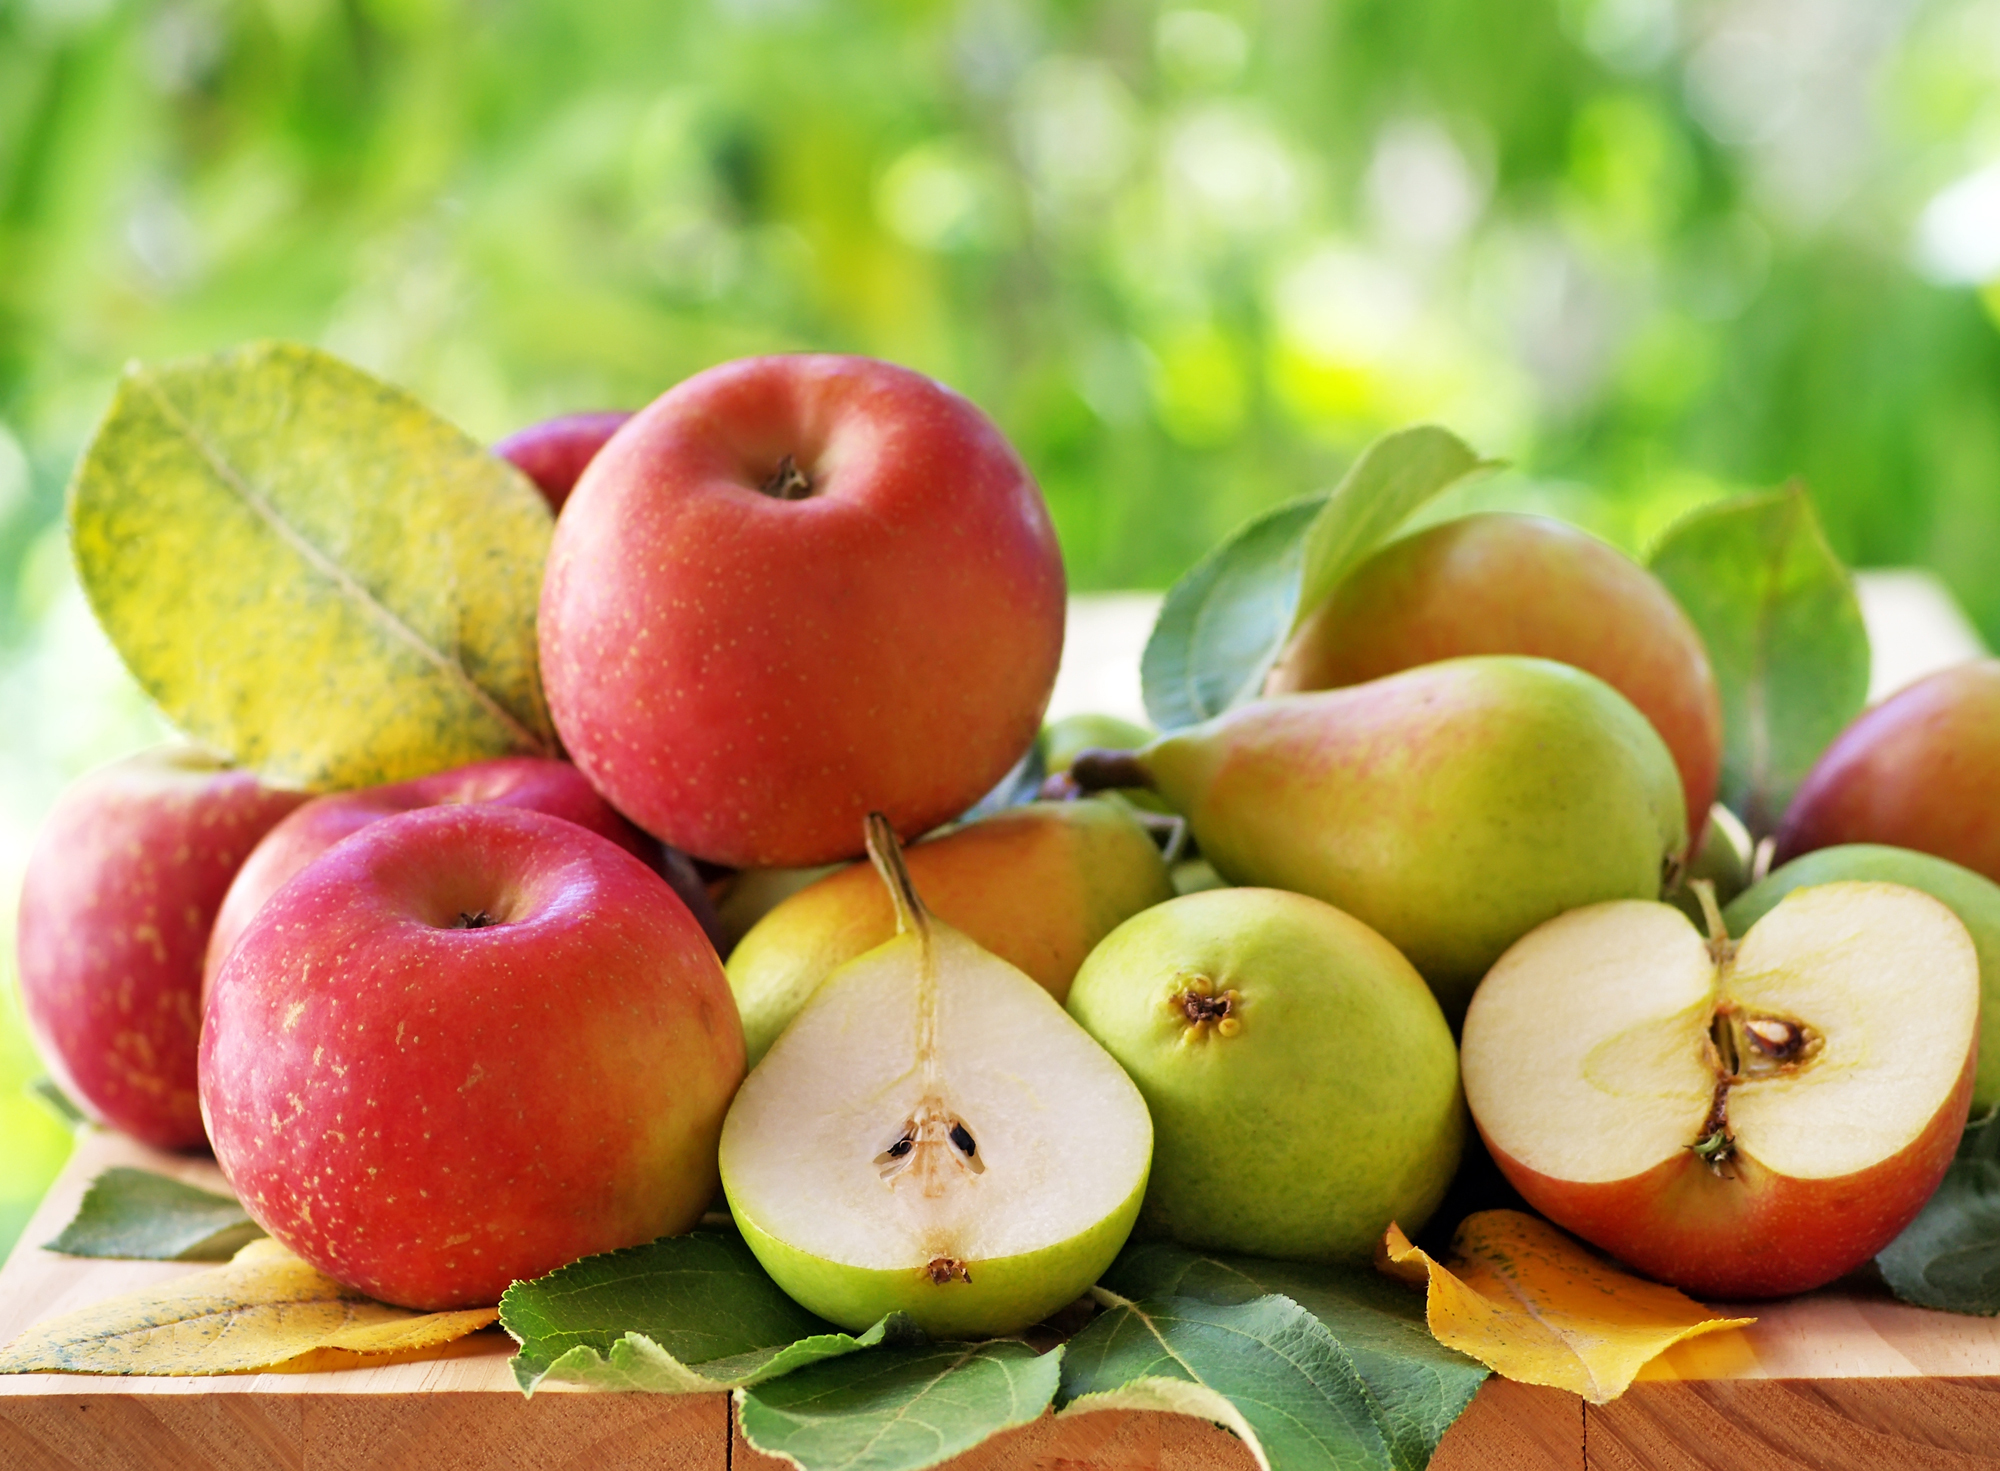  Яблоки и груши оказались средством для регулирования сахара в крови